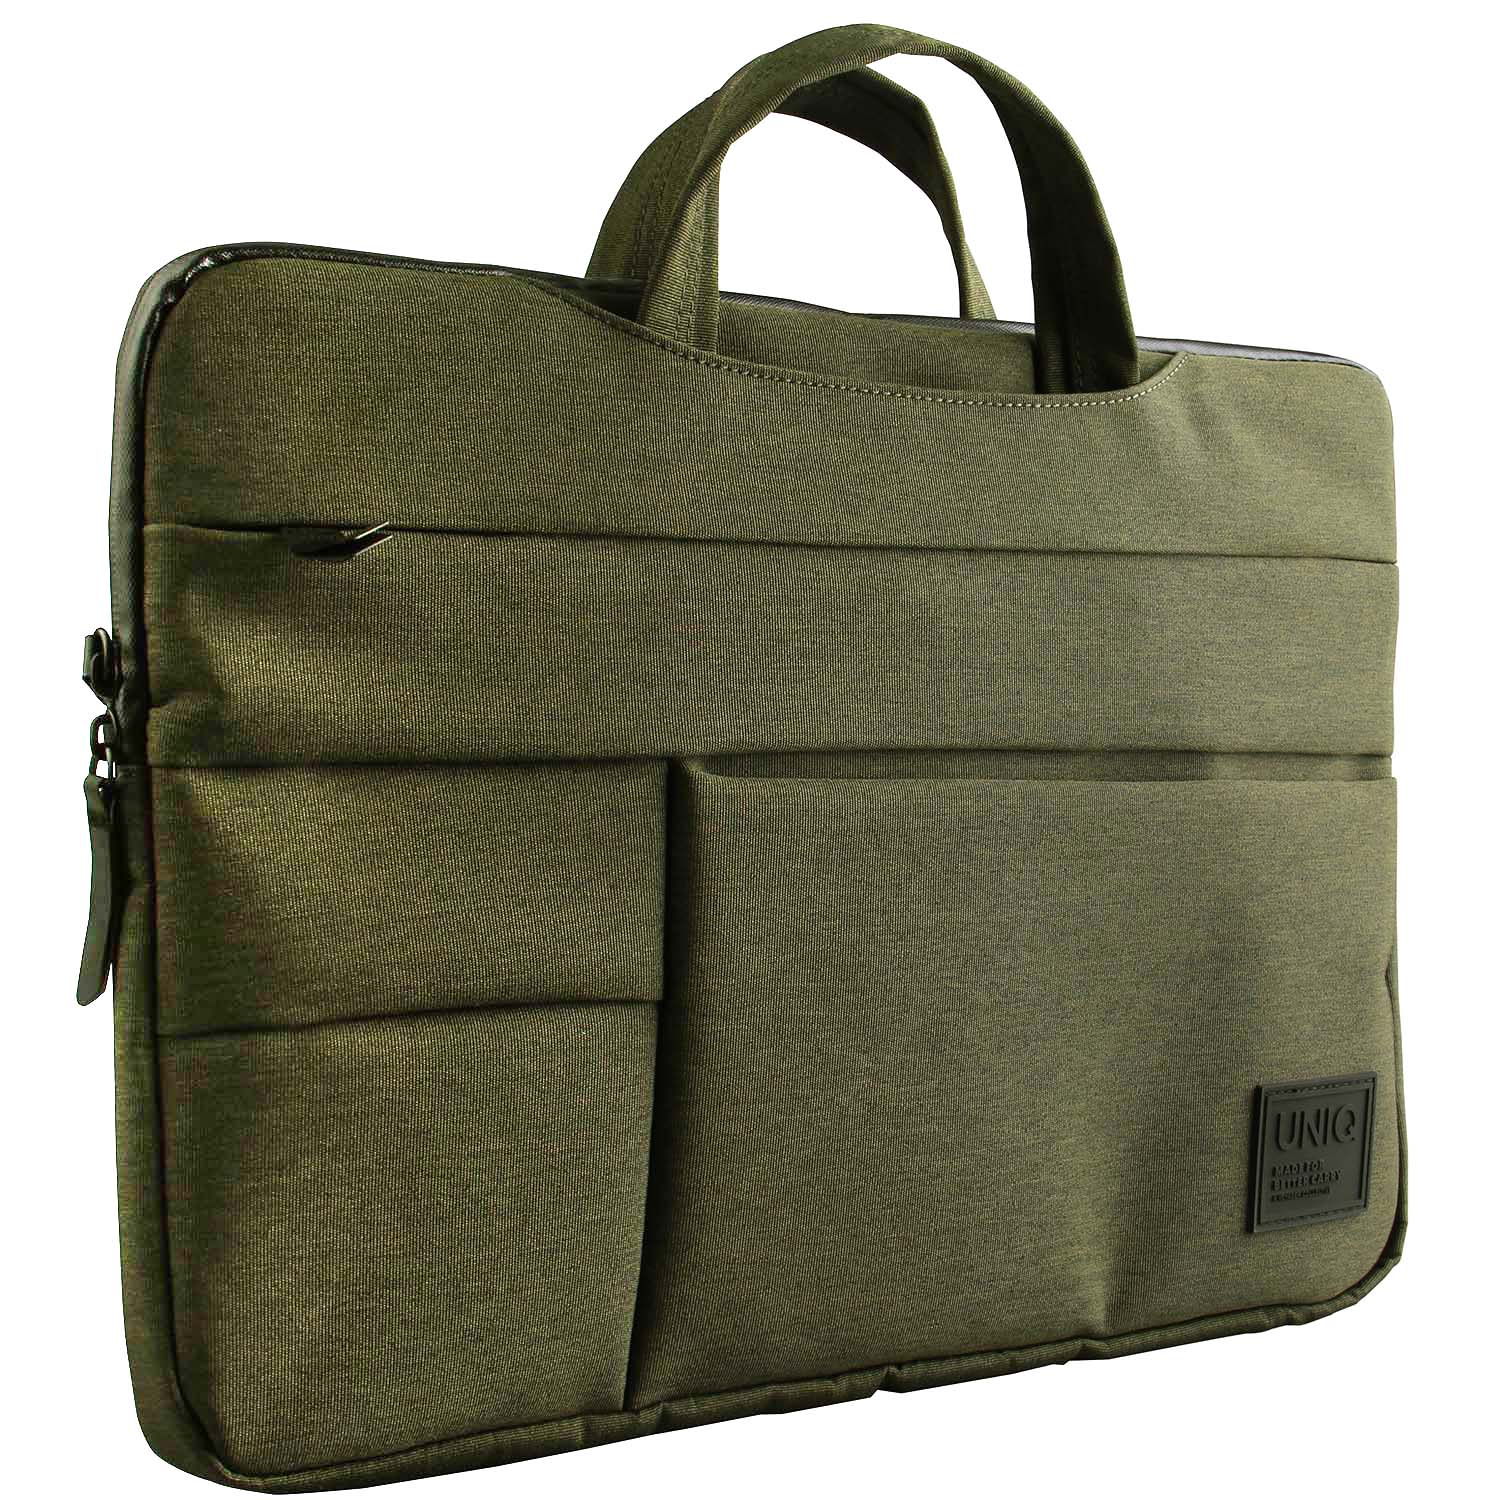 geanta-textil-pentru-laptop-max-15-inci-uniq-cavalier-2C-2in1-2C-verde